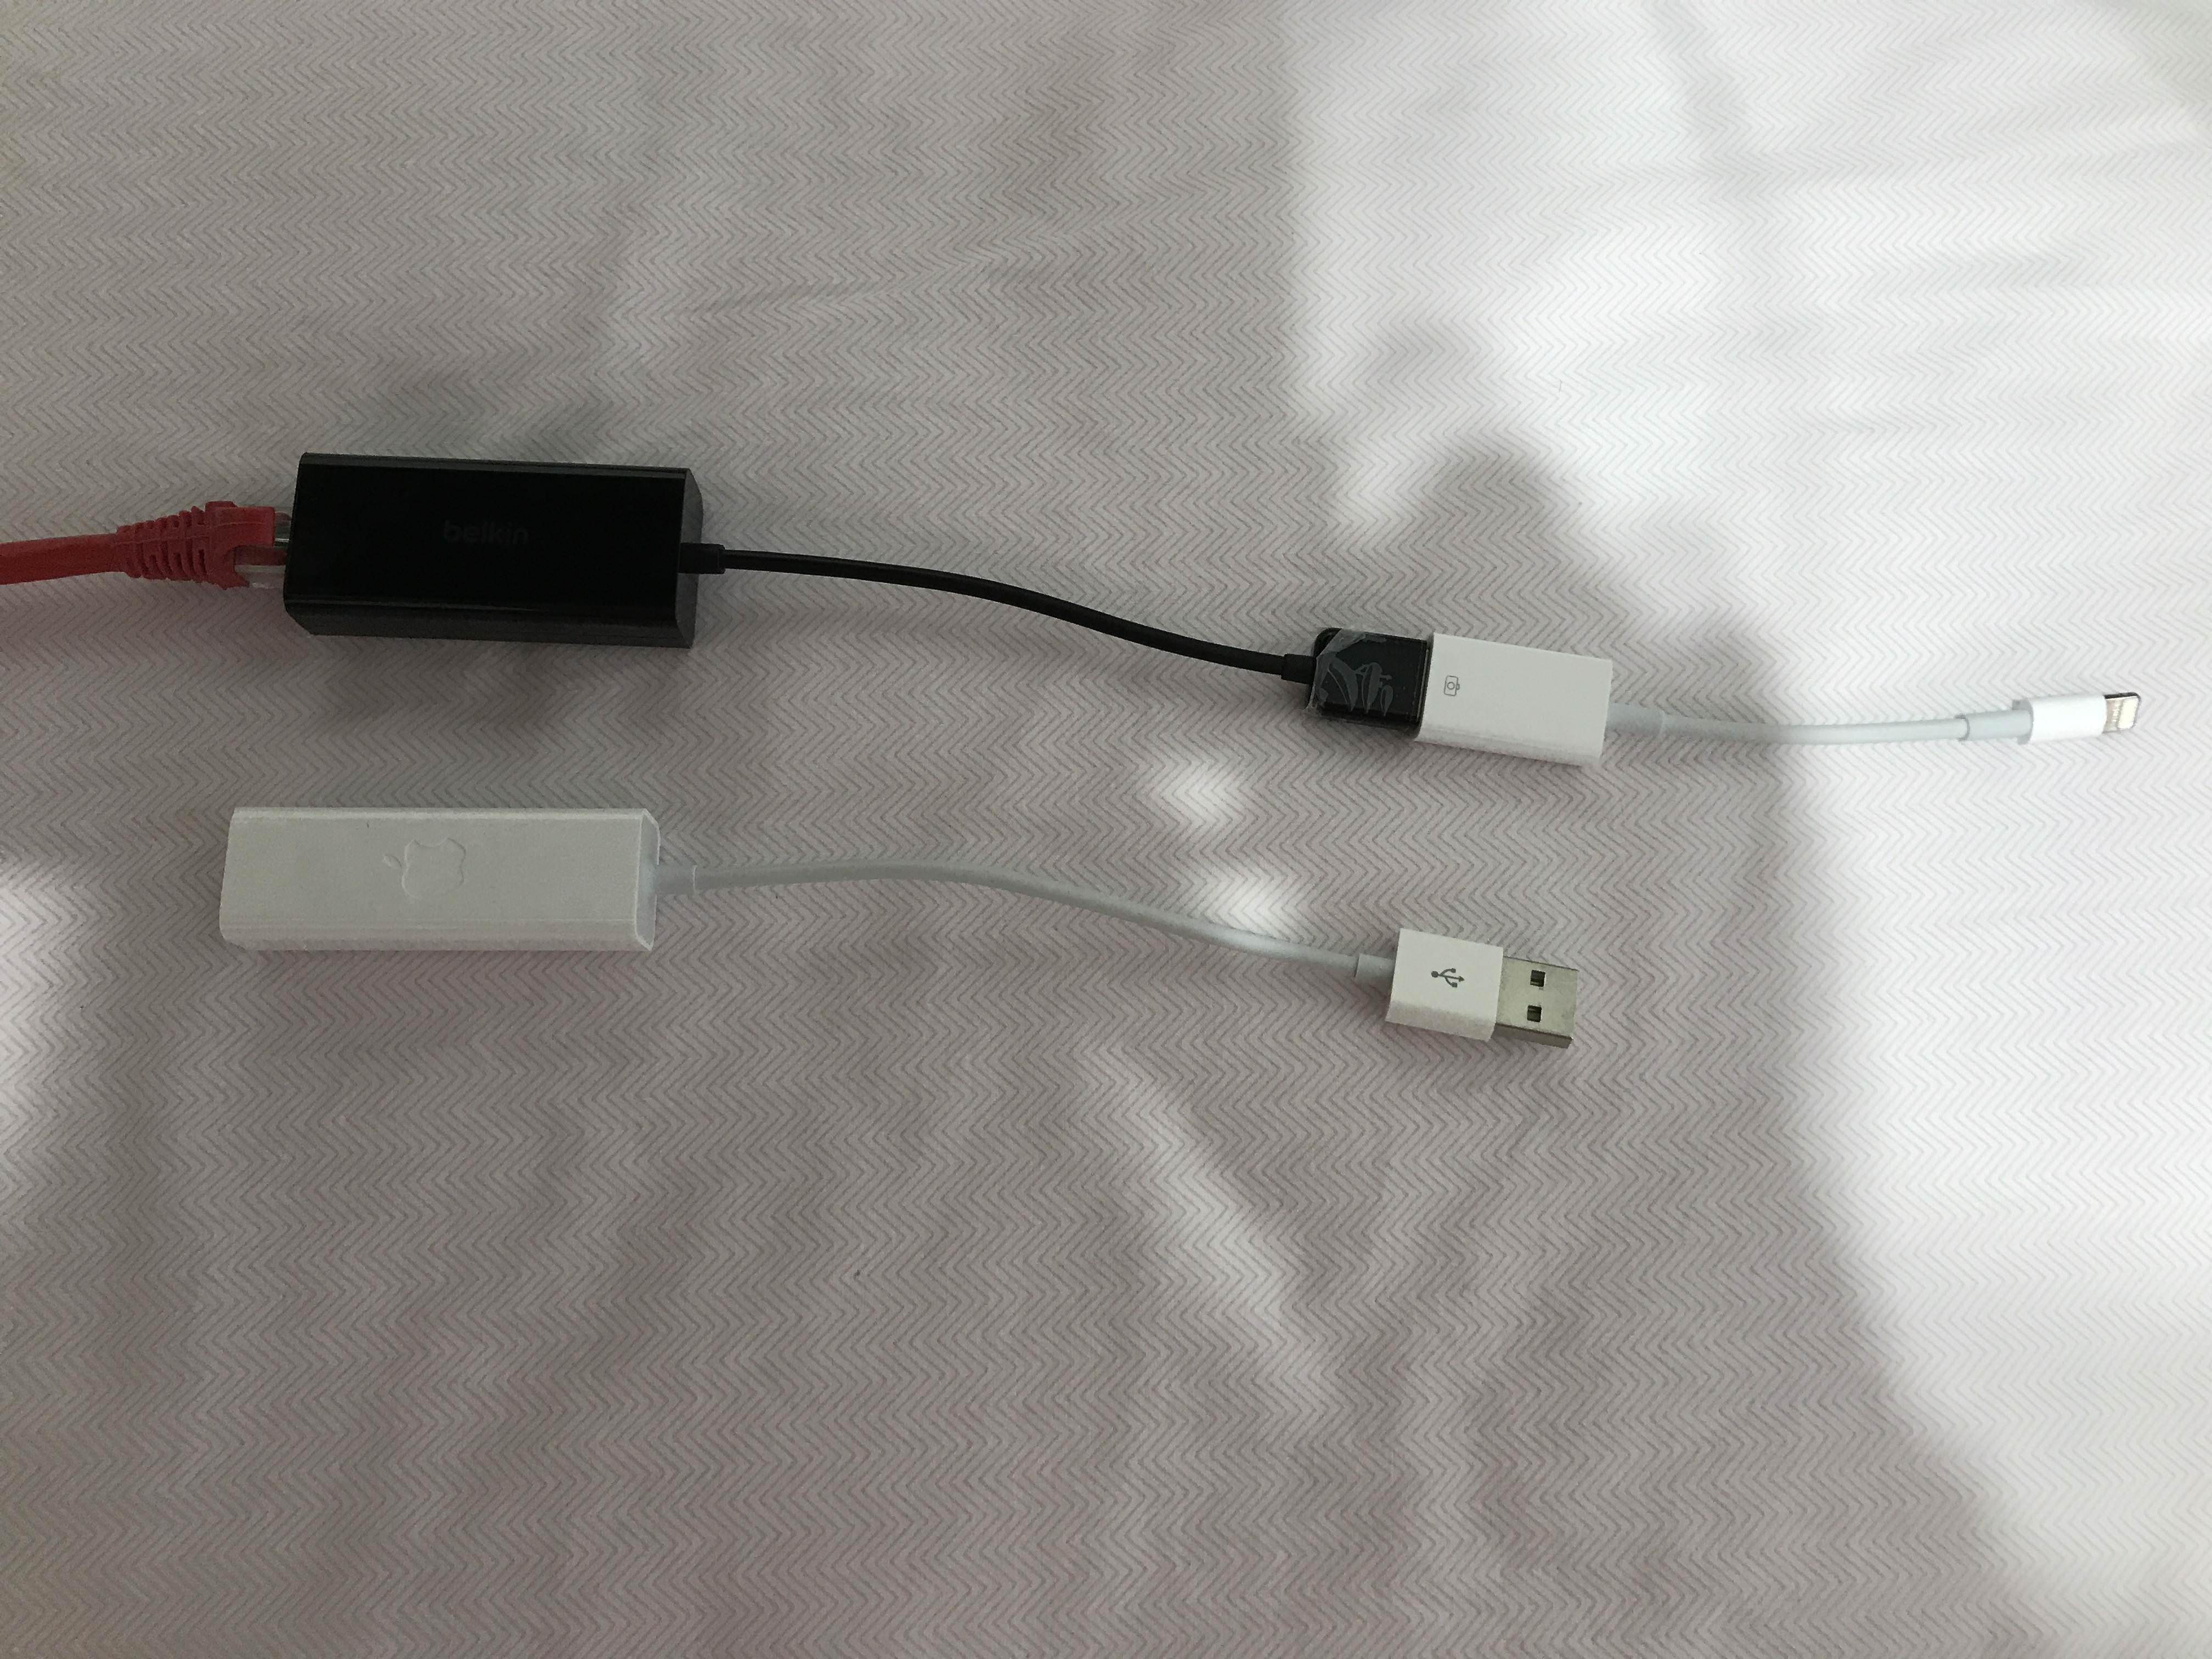 Adaptateur BELKIN Lightning et Ethernet pour iPad, iPhone ou iPod